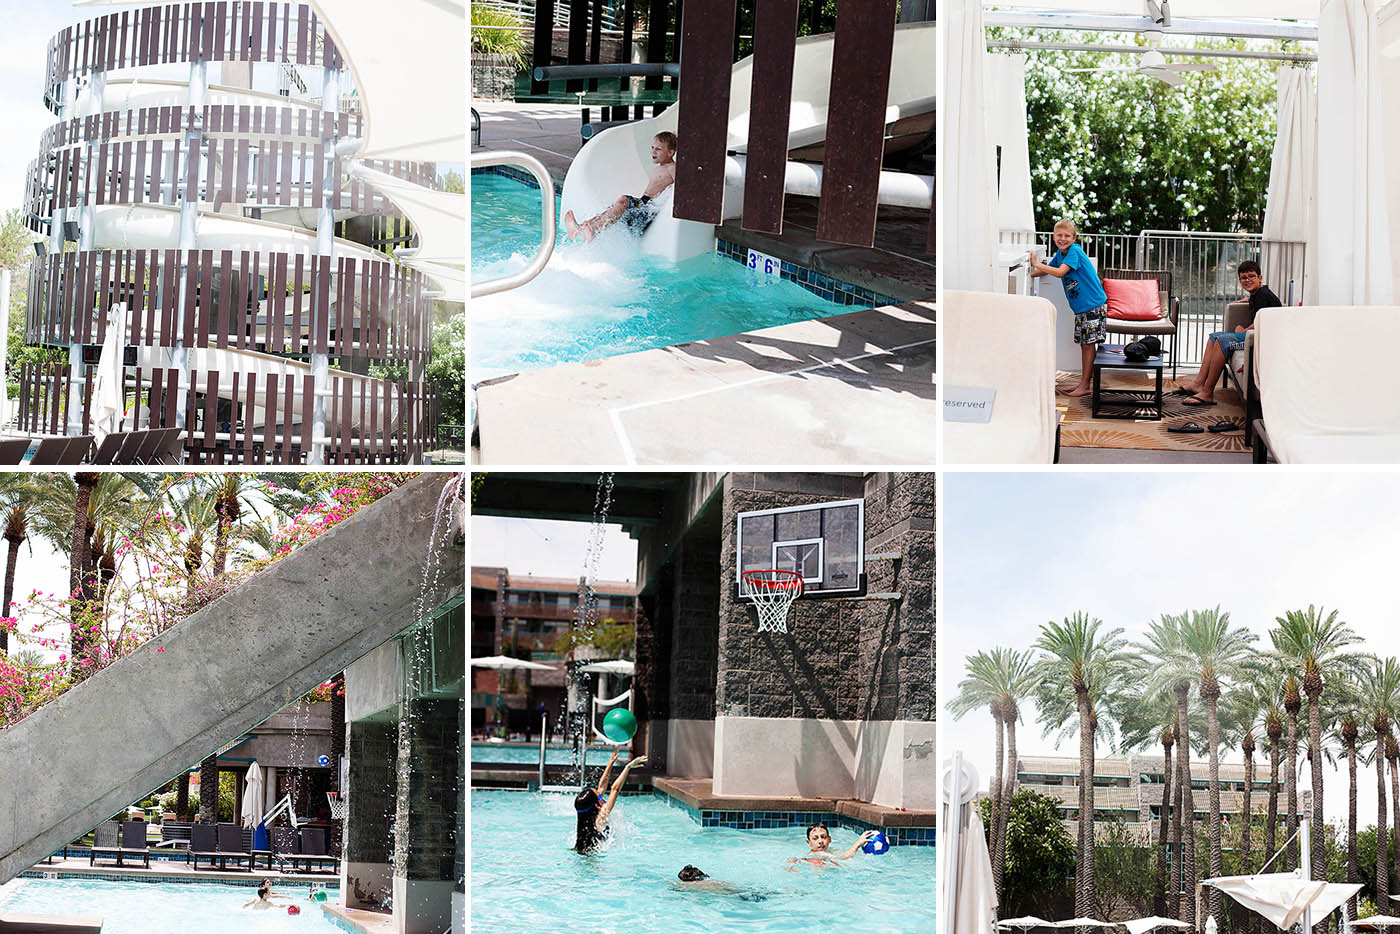 Pool Area - Scottsdale Resort Pools